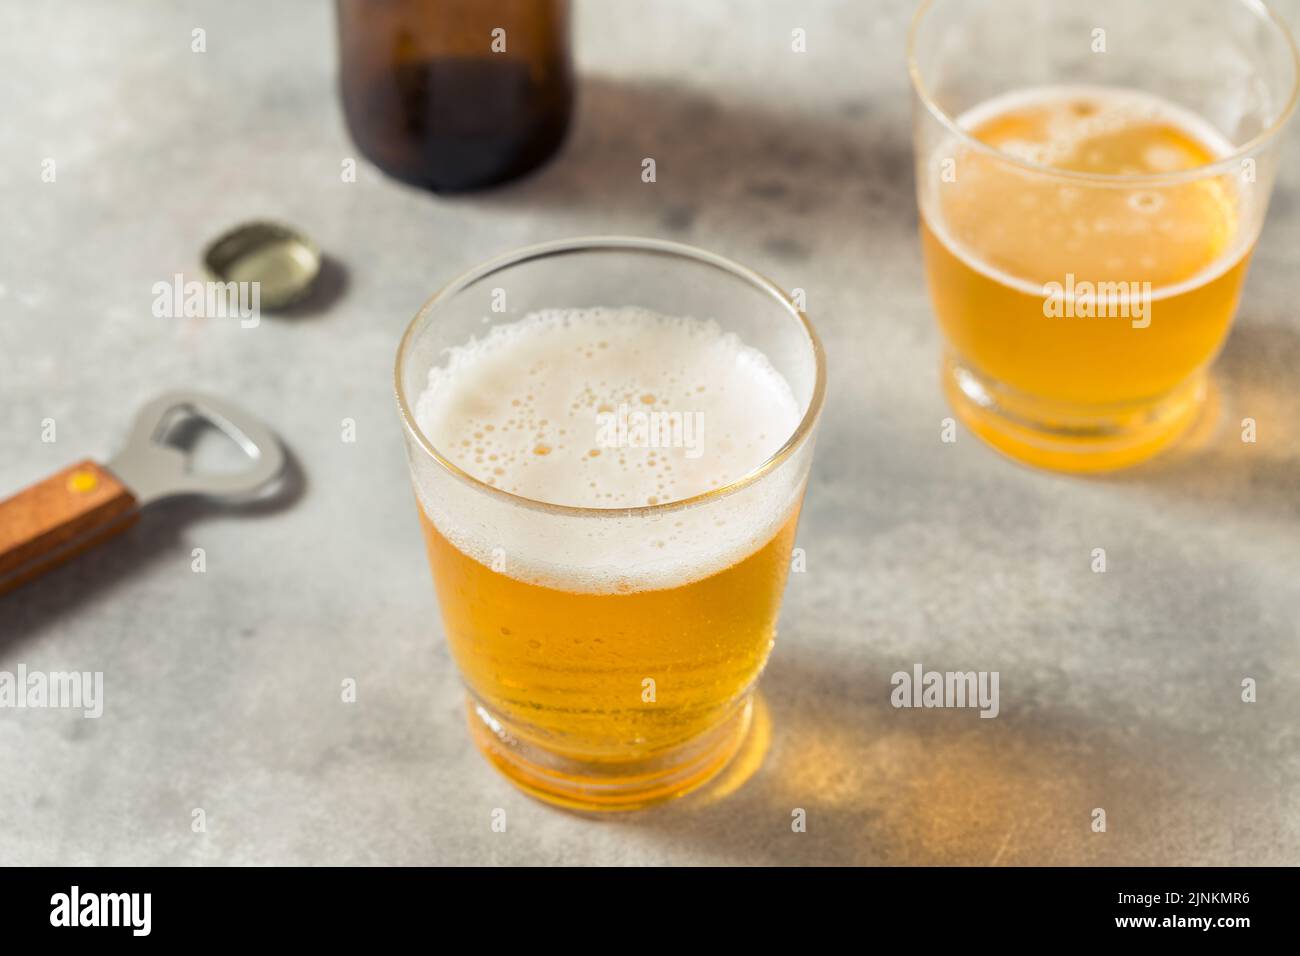 Bière rafraîchissante froide dans un verre court Banque D'Images